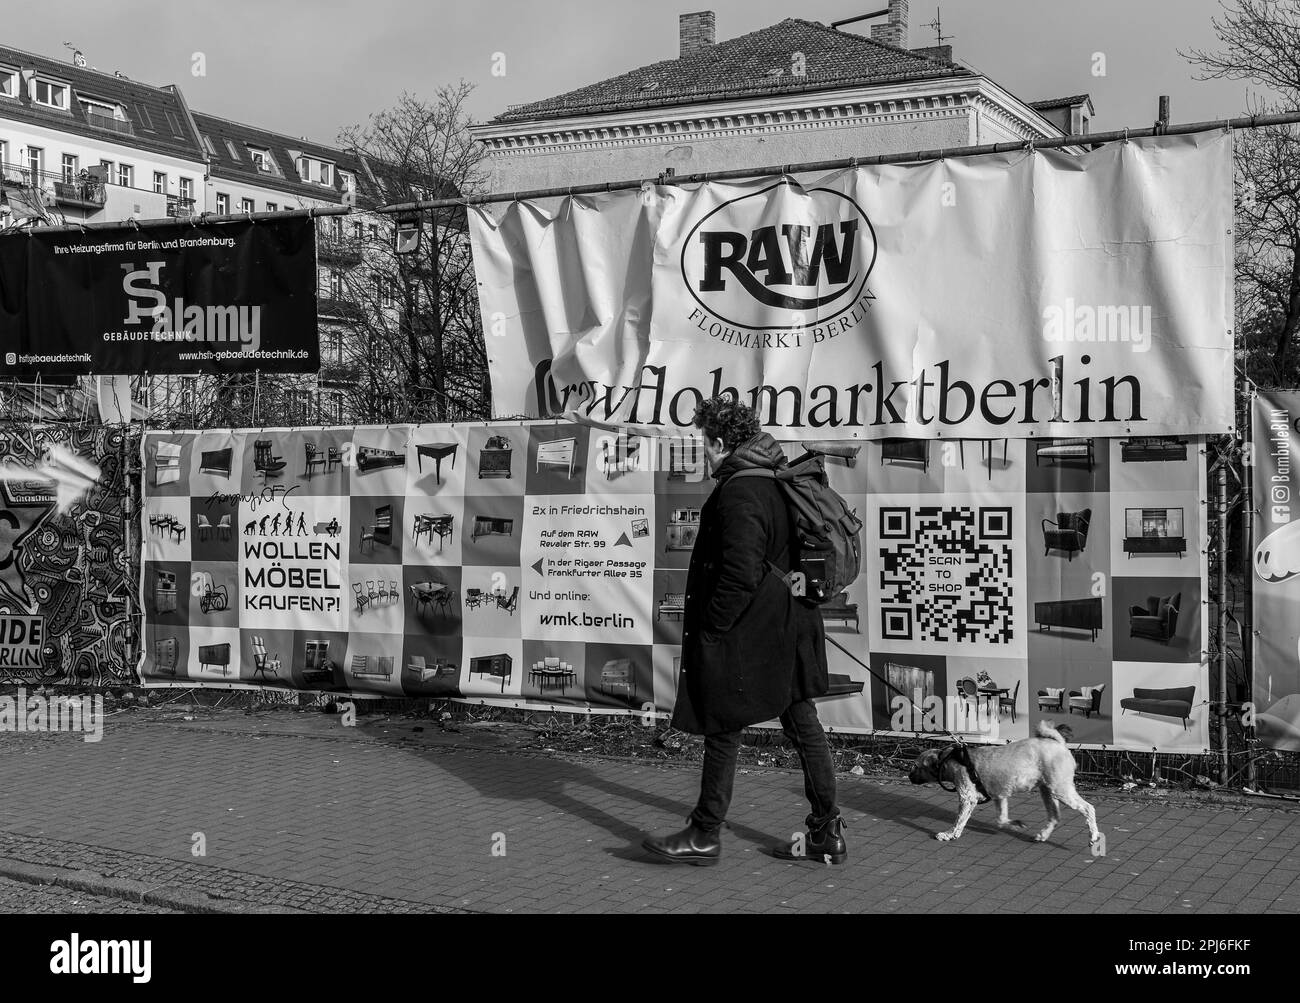 Photographie en noir et blanc, clôture de construction avec affiches sur le site RAW, Berlin Friedrichshain, Berlin, Allemagne Banque D'Images